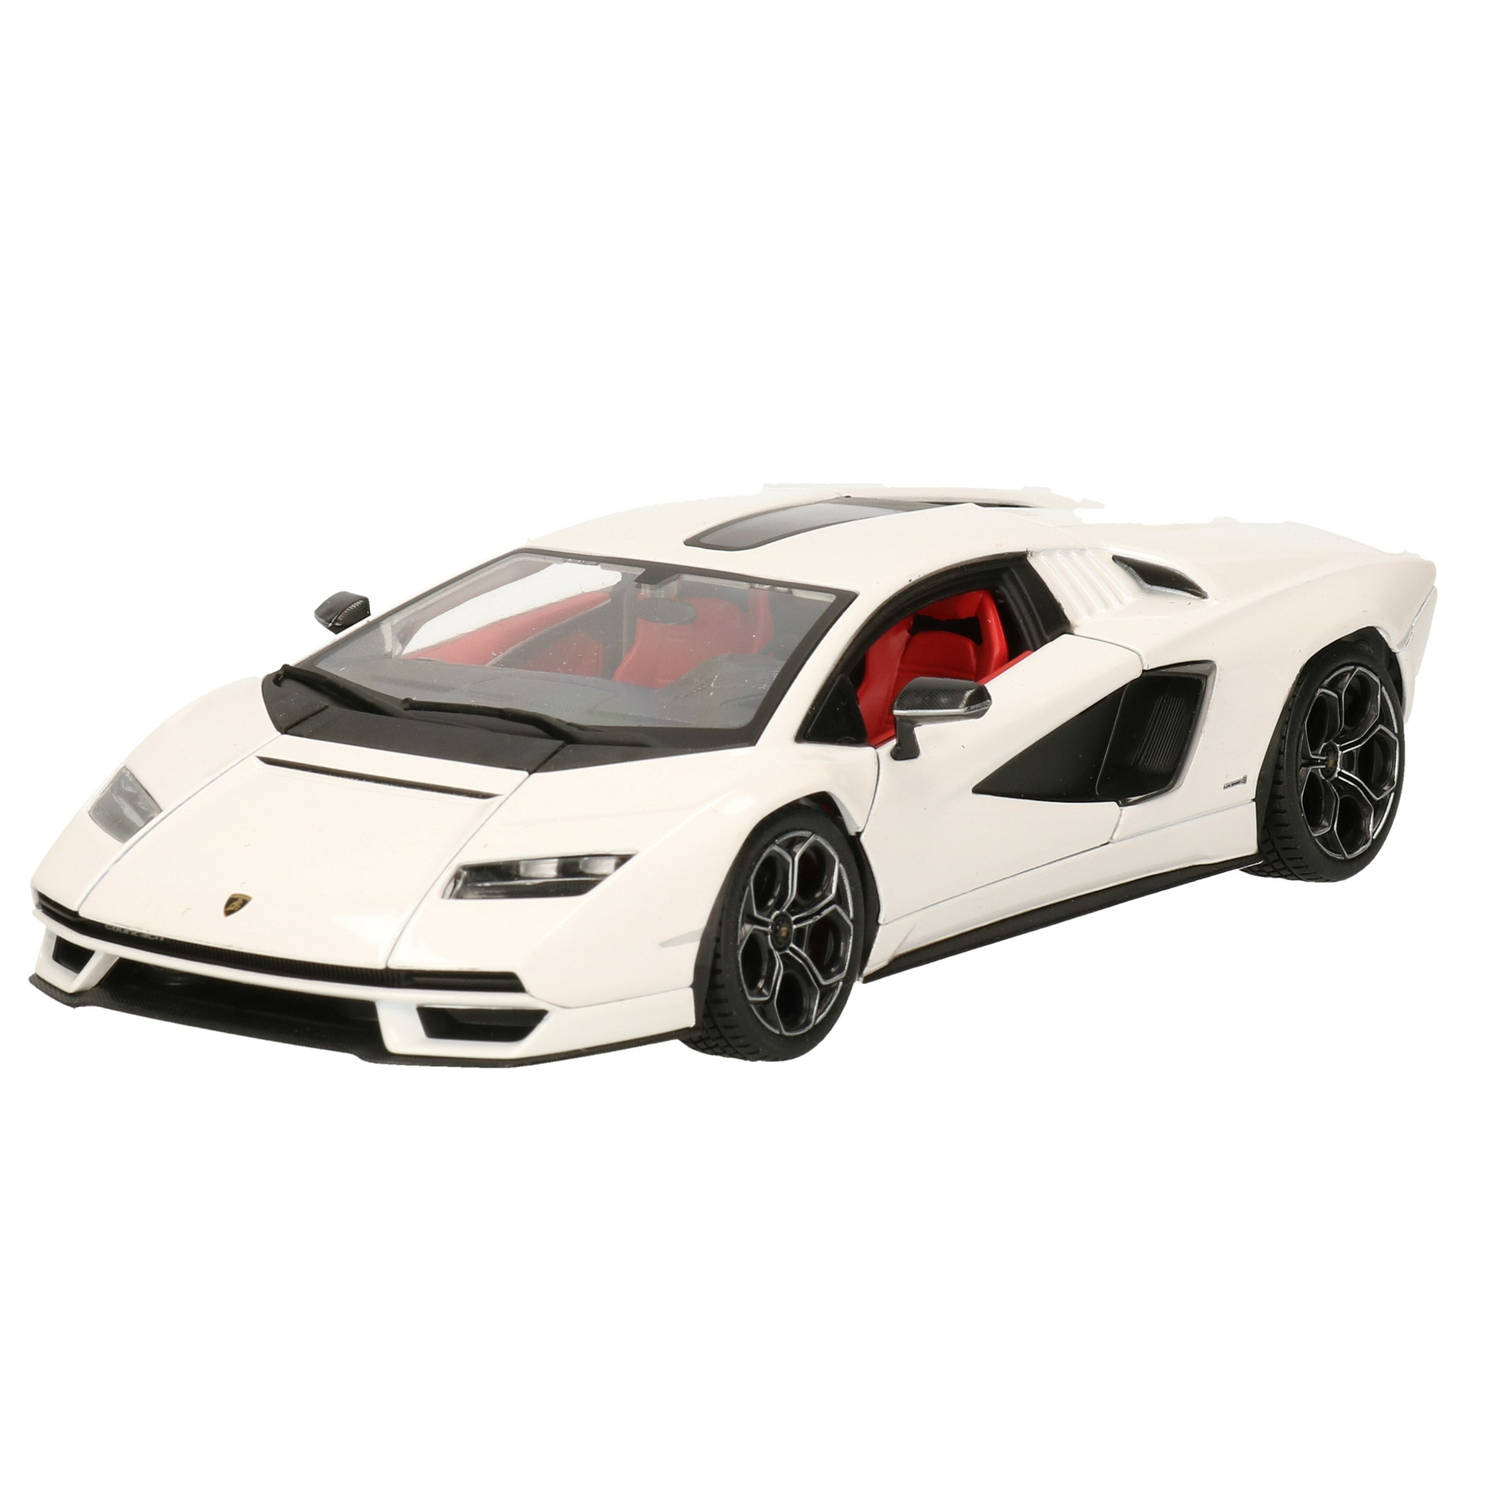 Modelauto/speelgoedauto Lamborghini Countach schaal 1:24/20 x 8 x 5 cm - Speelgoed auto&apos;s